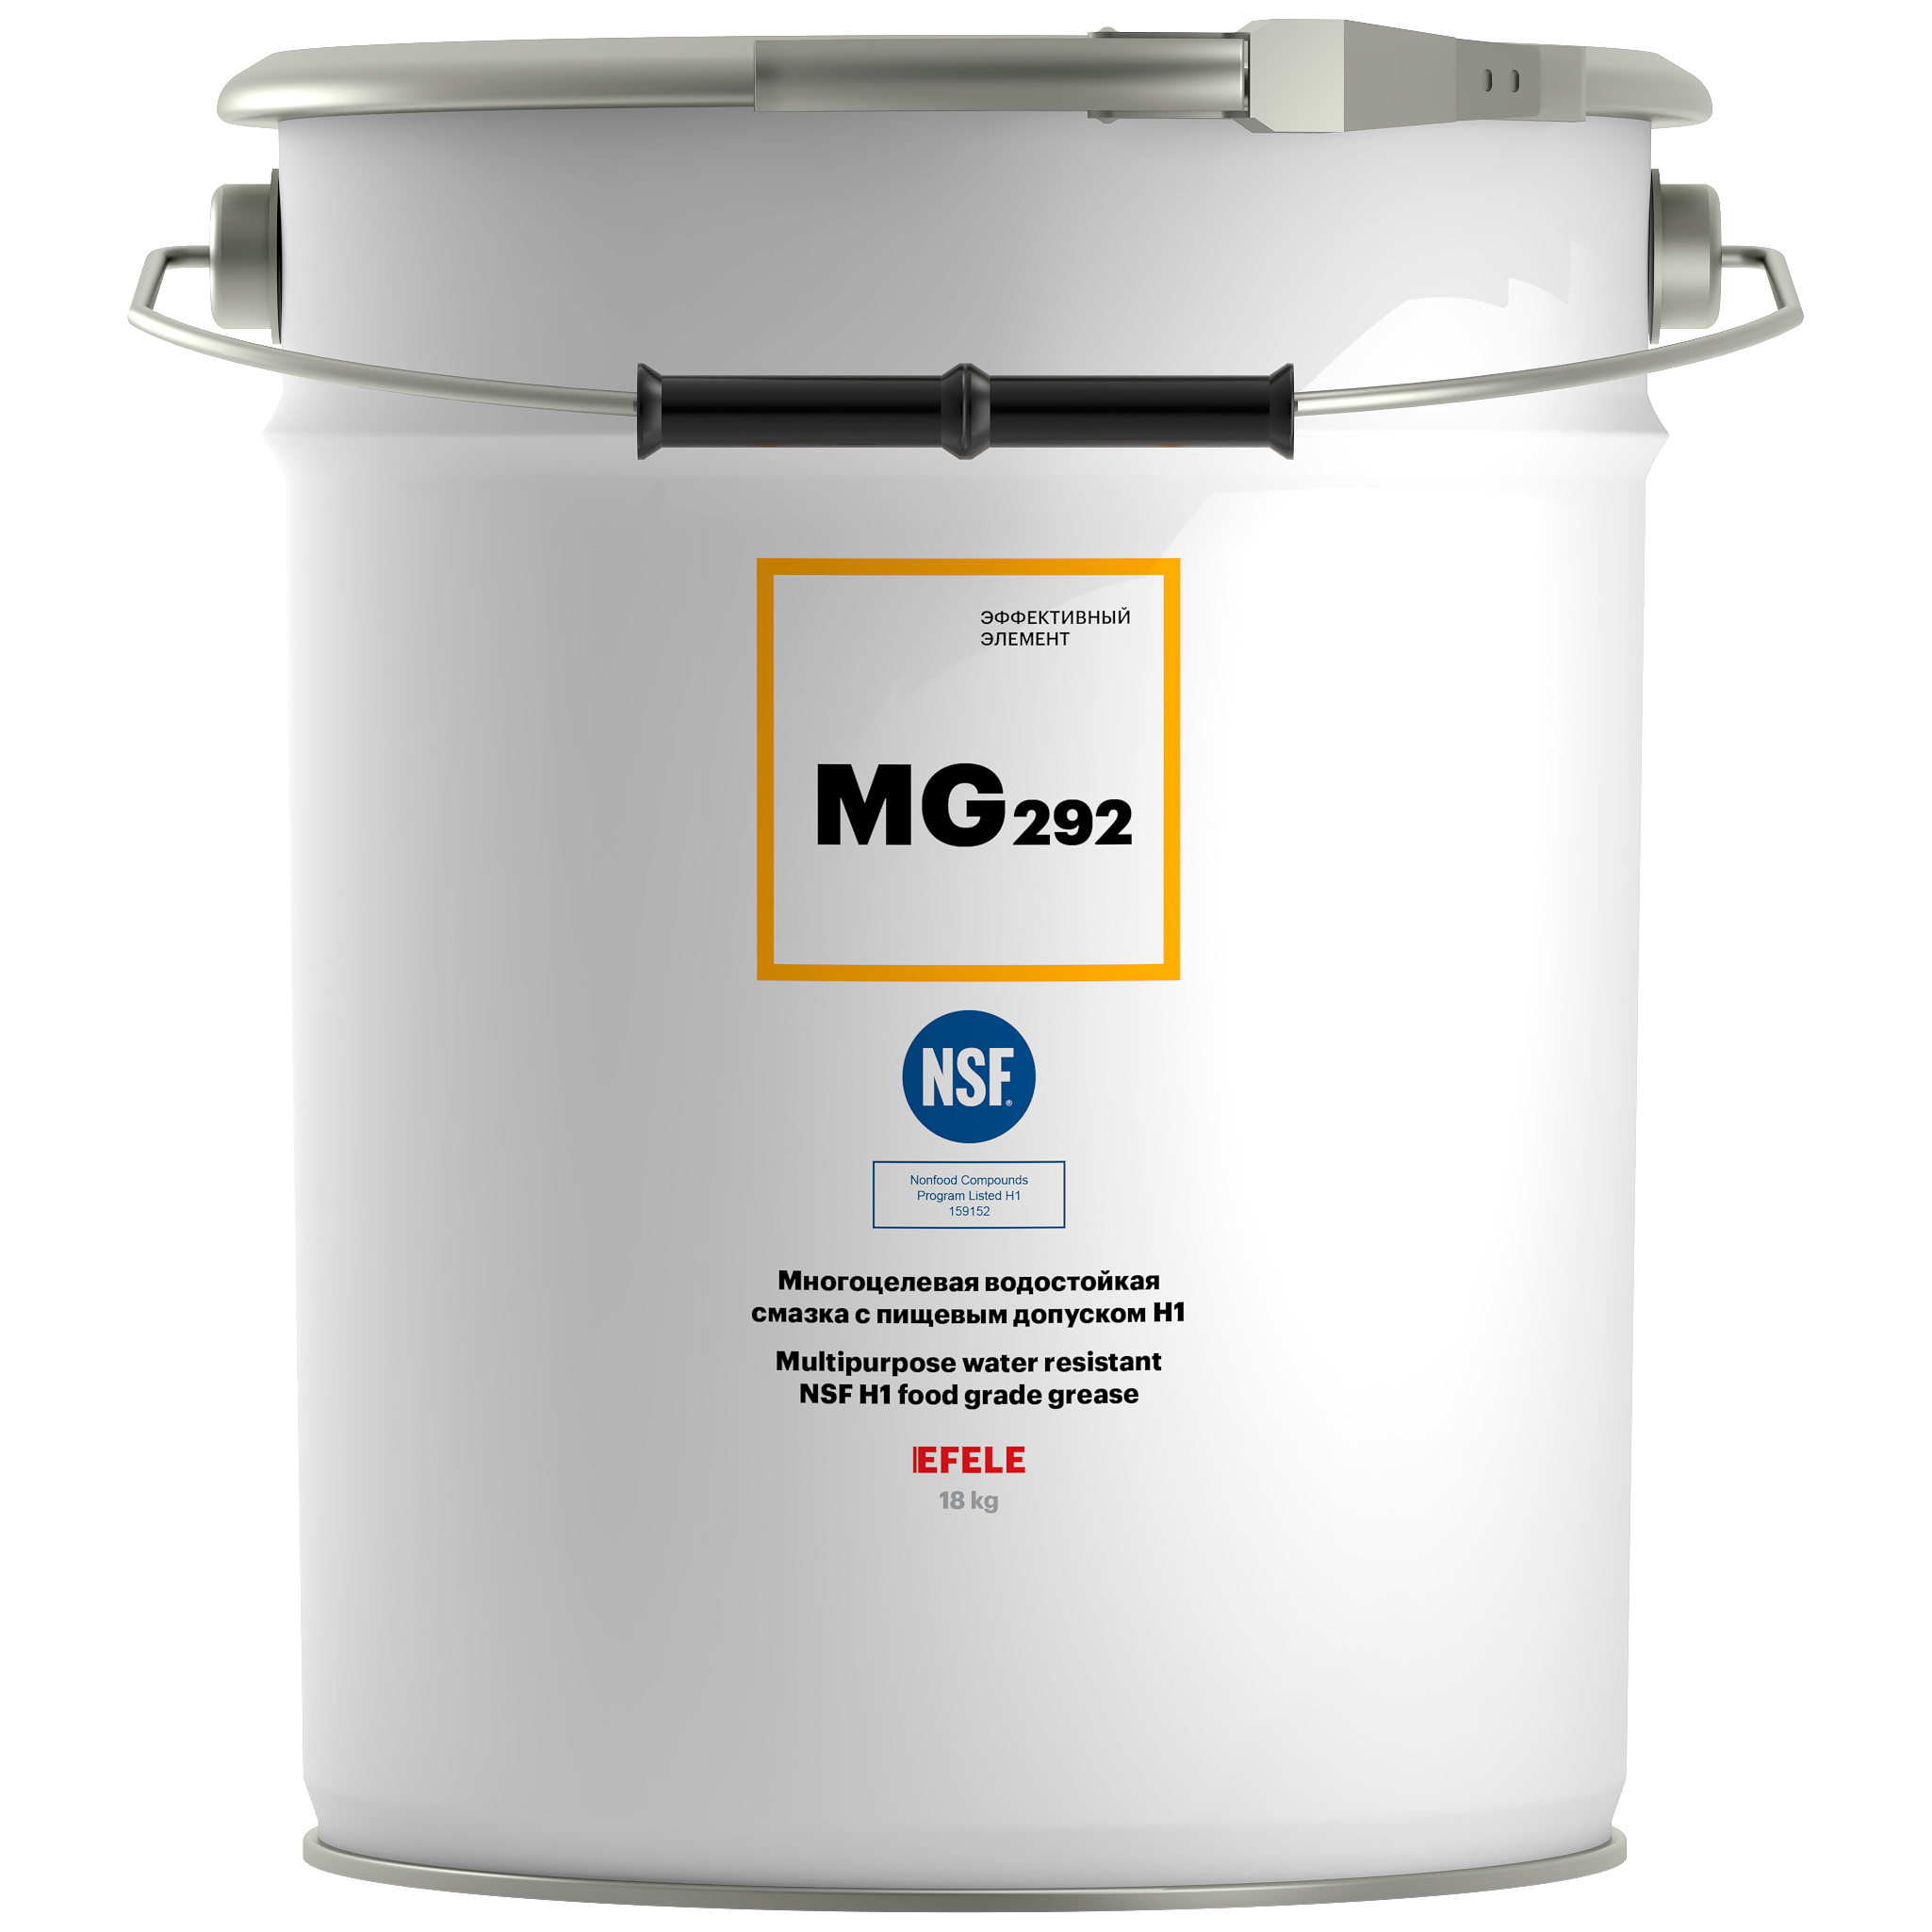 Многоцелевая водостойкая смазка с пищевым допуском Н1 EFELE MG-292 (18 кг)